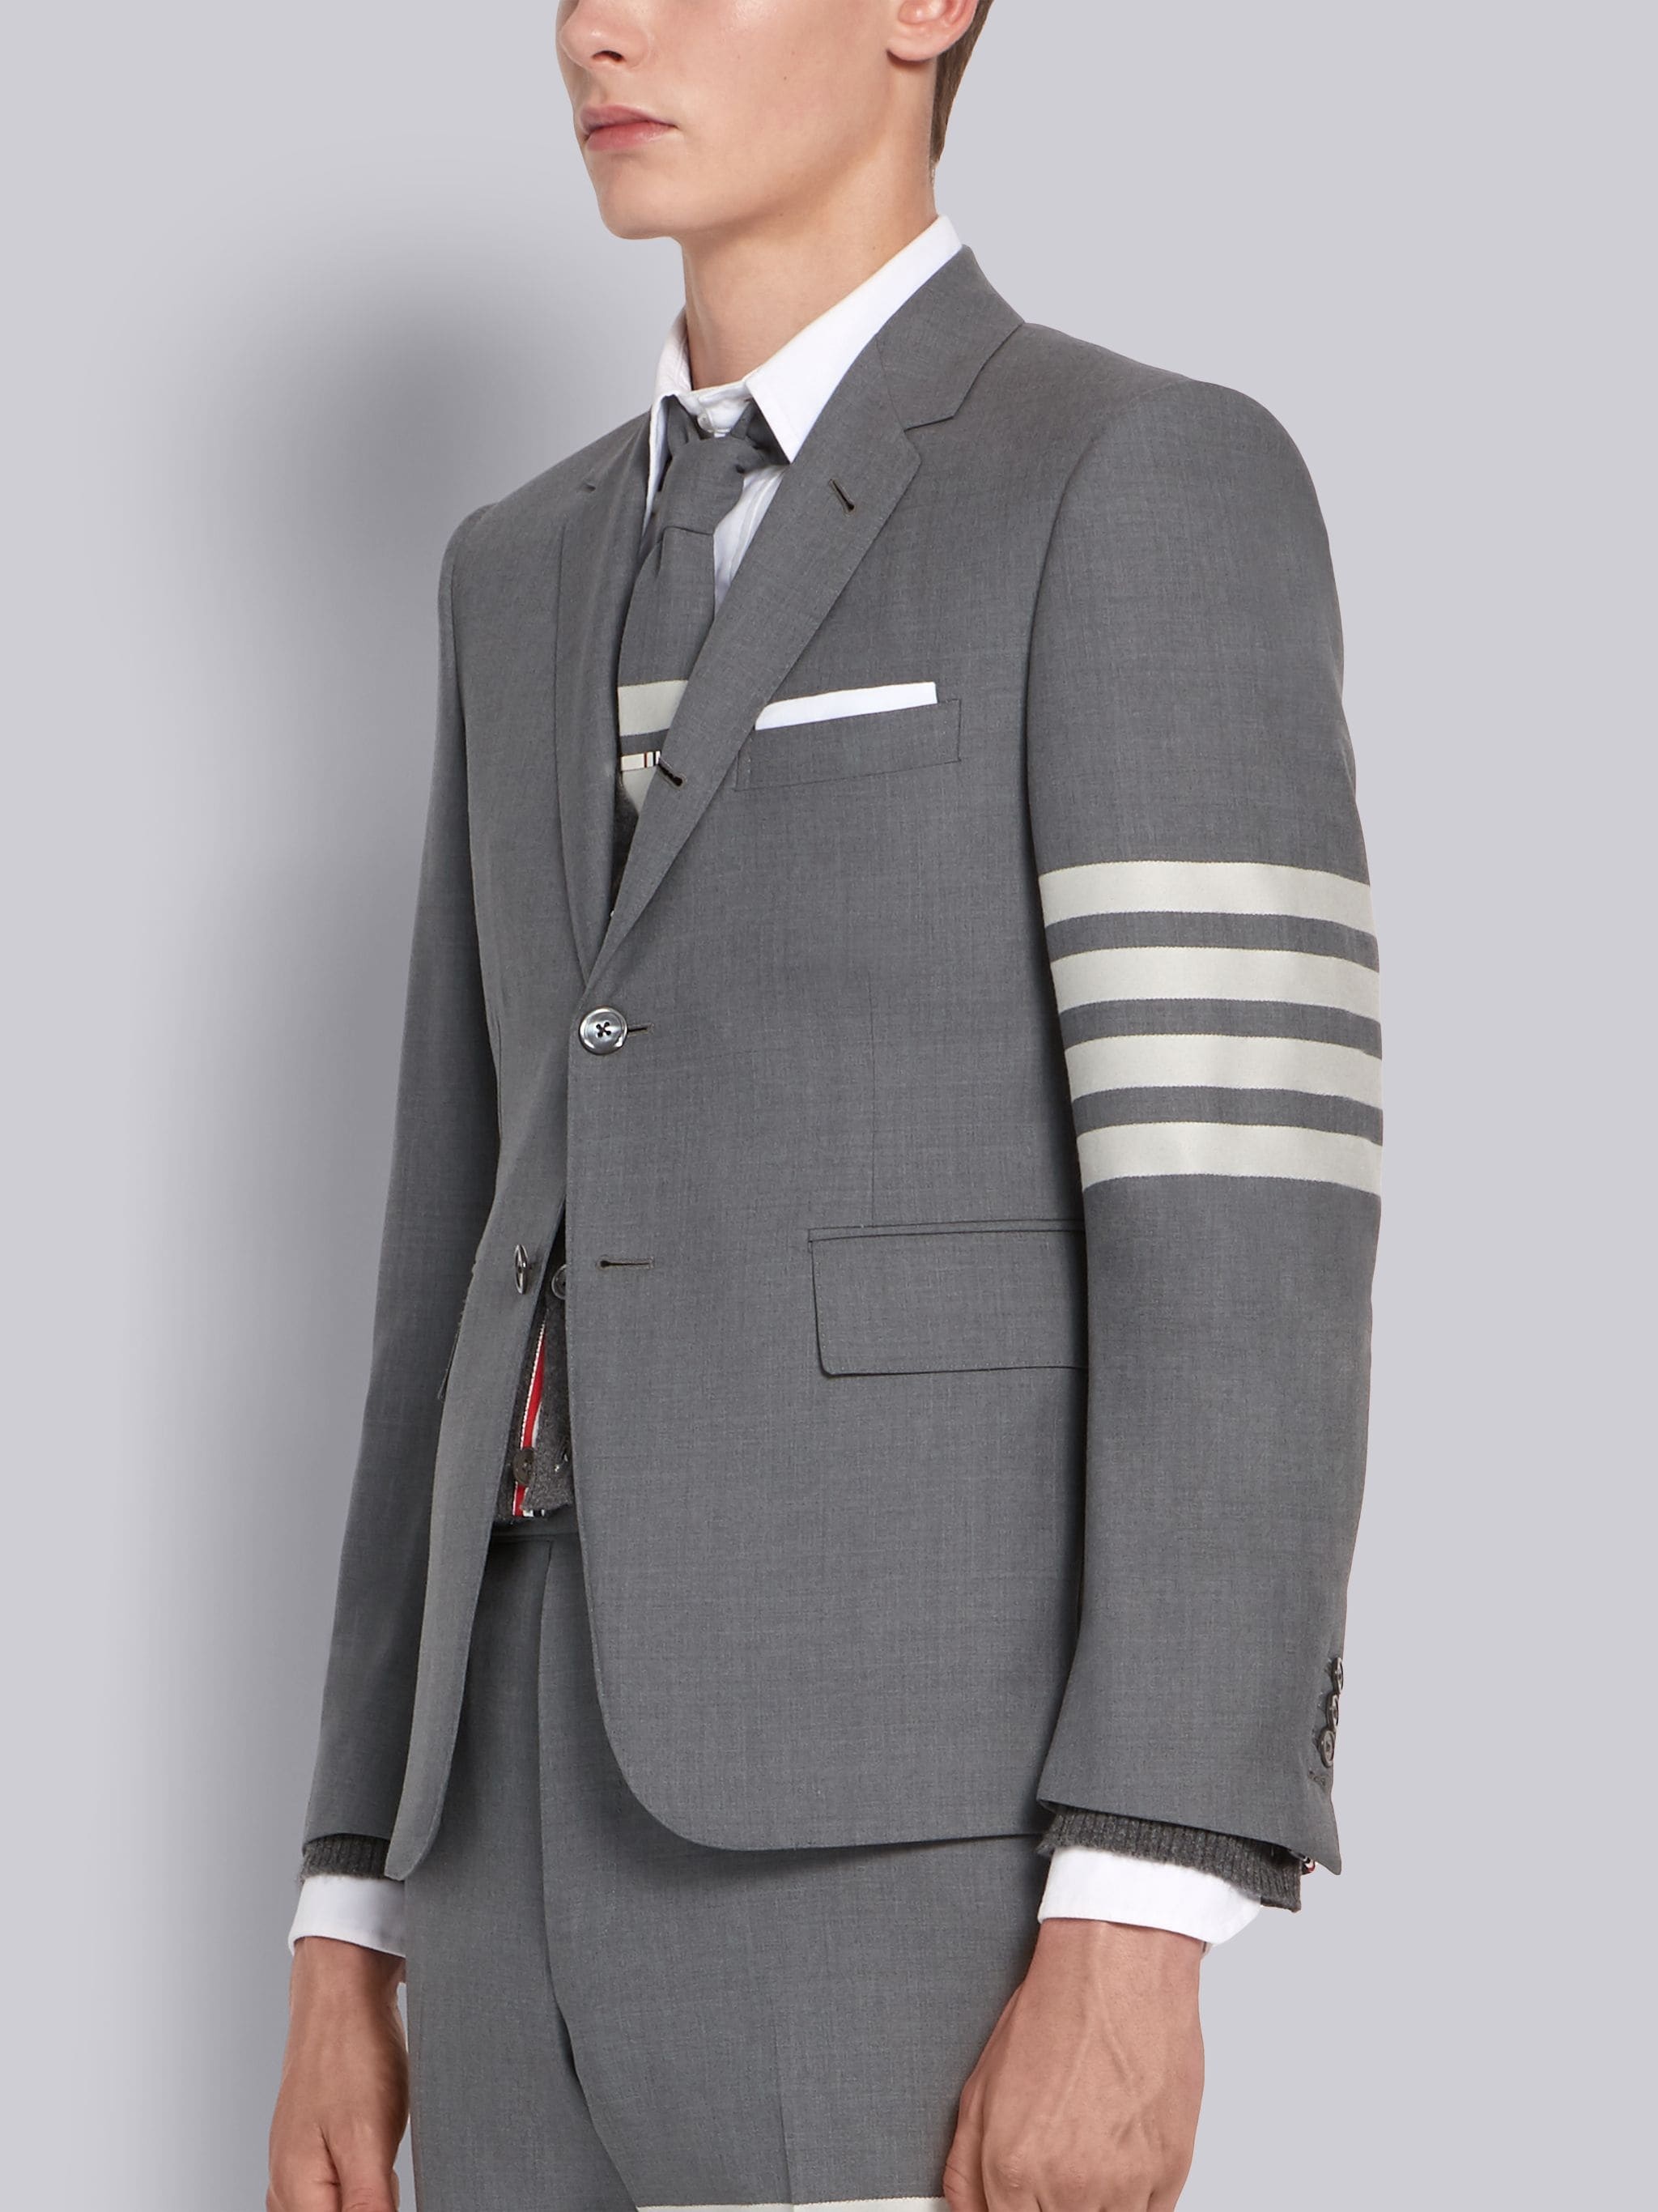 Medium Grey Wool 4-Bar Classic Sport Coat - 2